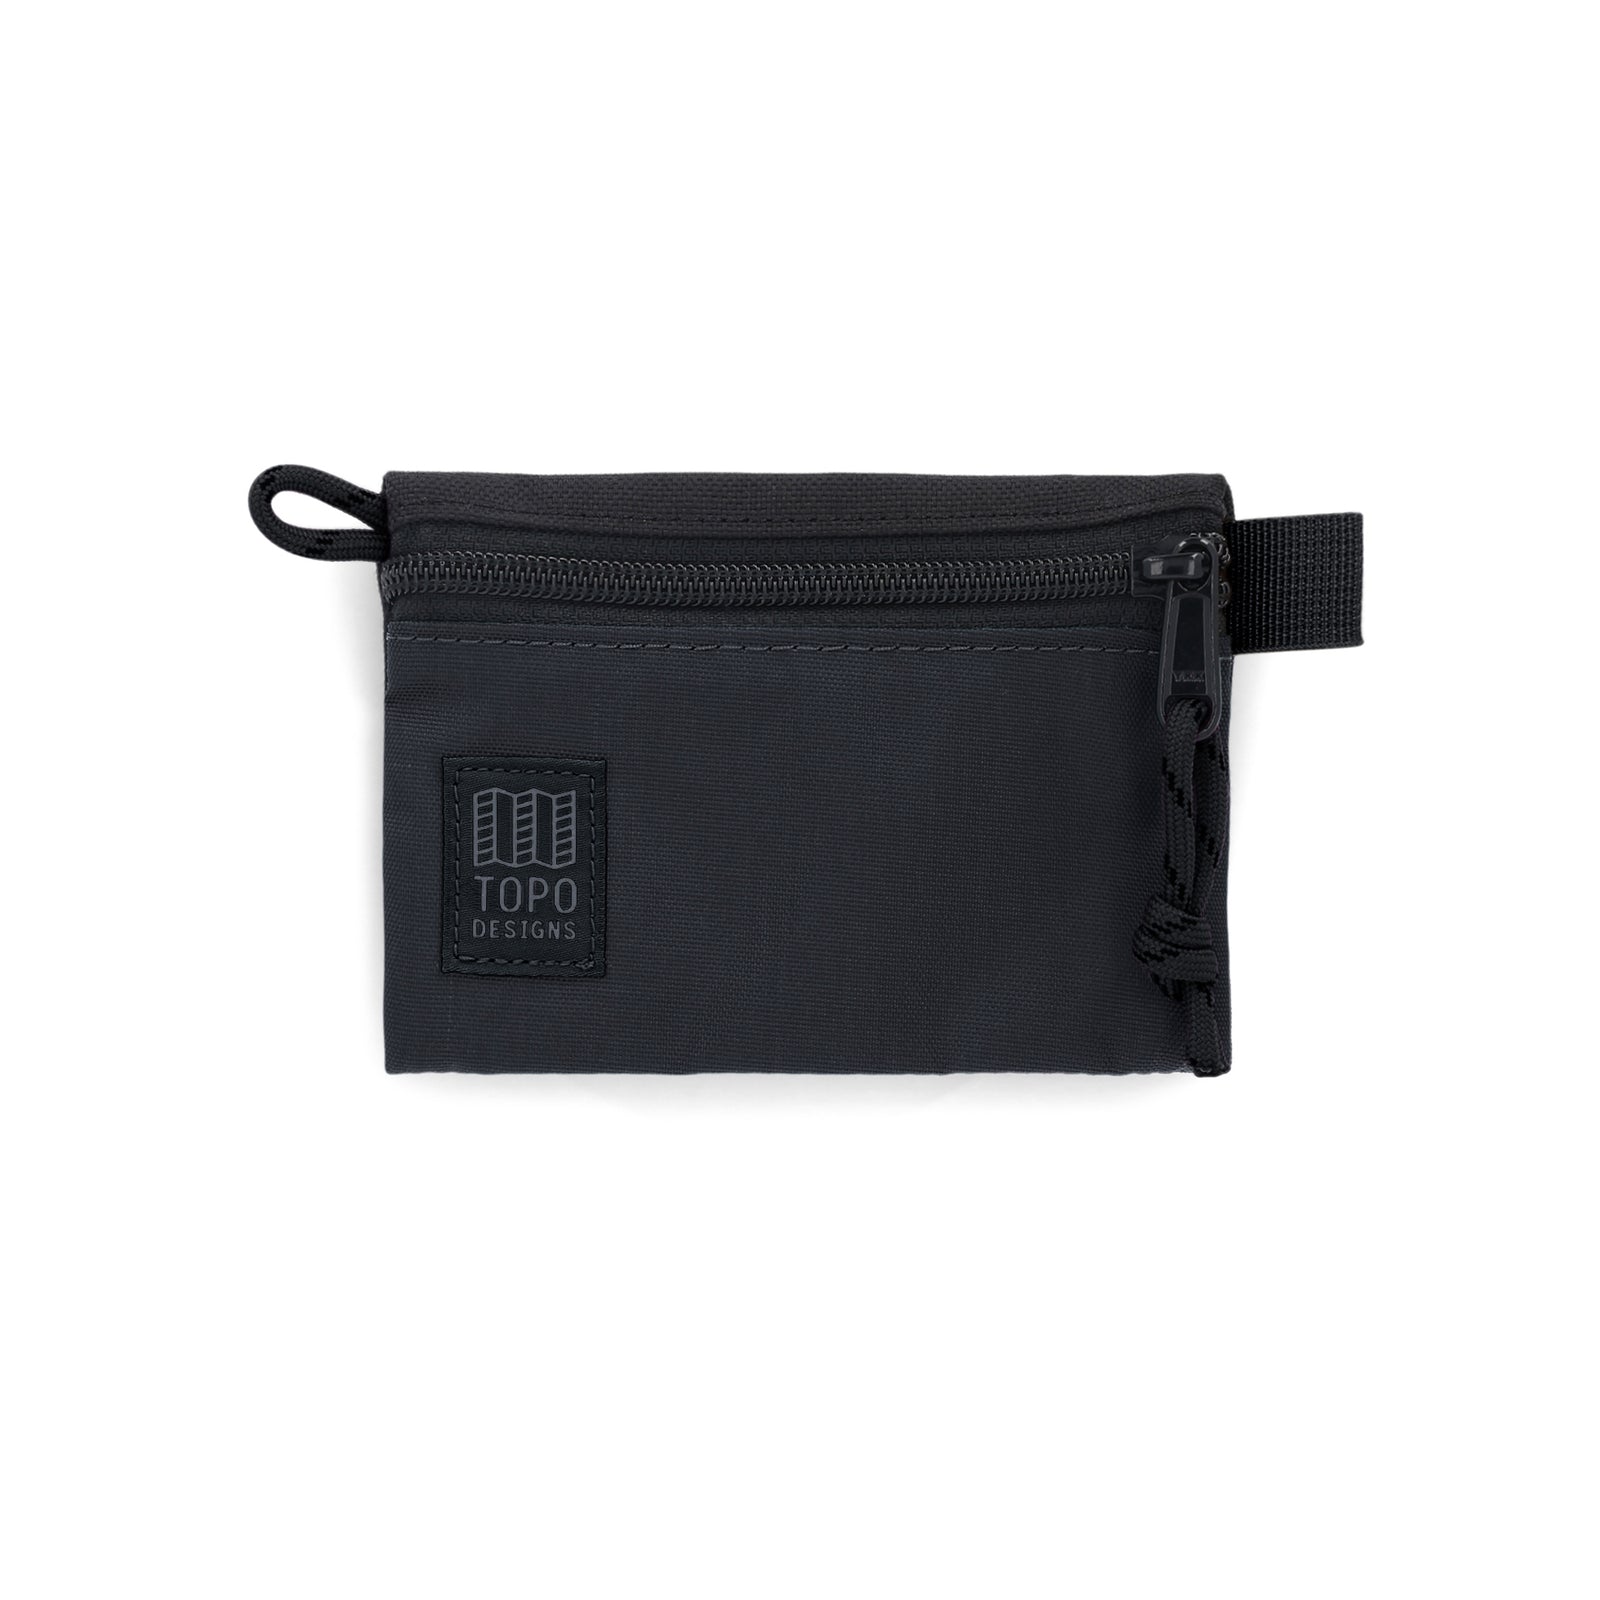 Topo Designs Accessory Bag "Micro" in "Black / Black"